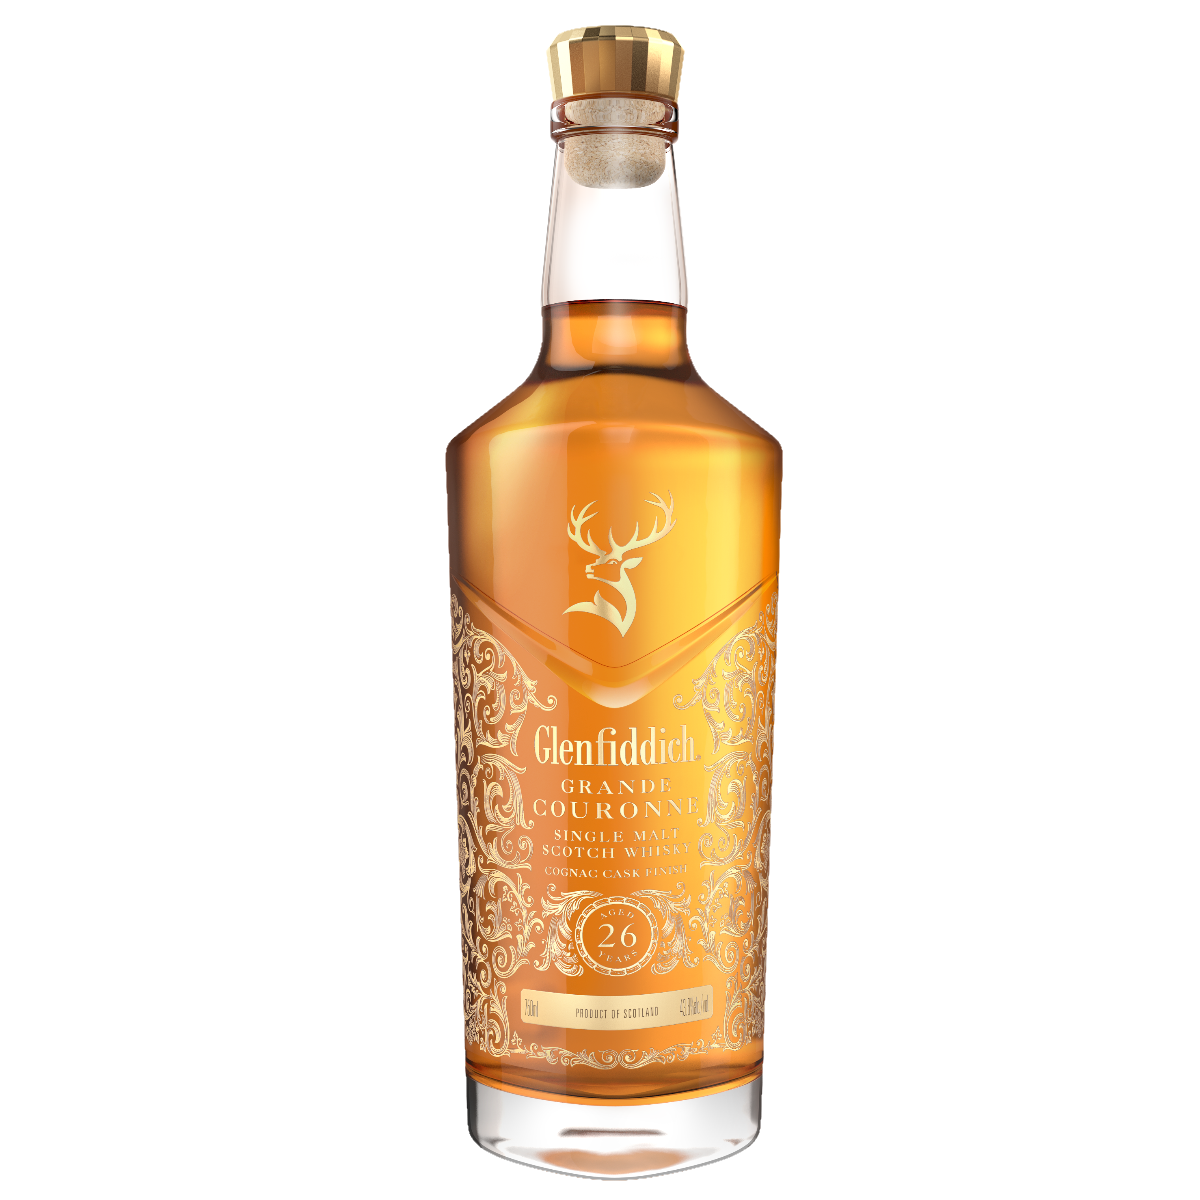 Glenfiddich 26yo Grande Couronne bottle